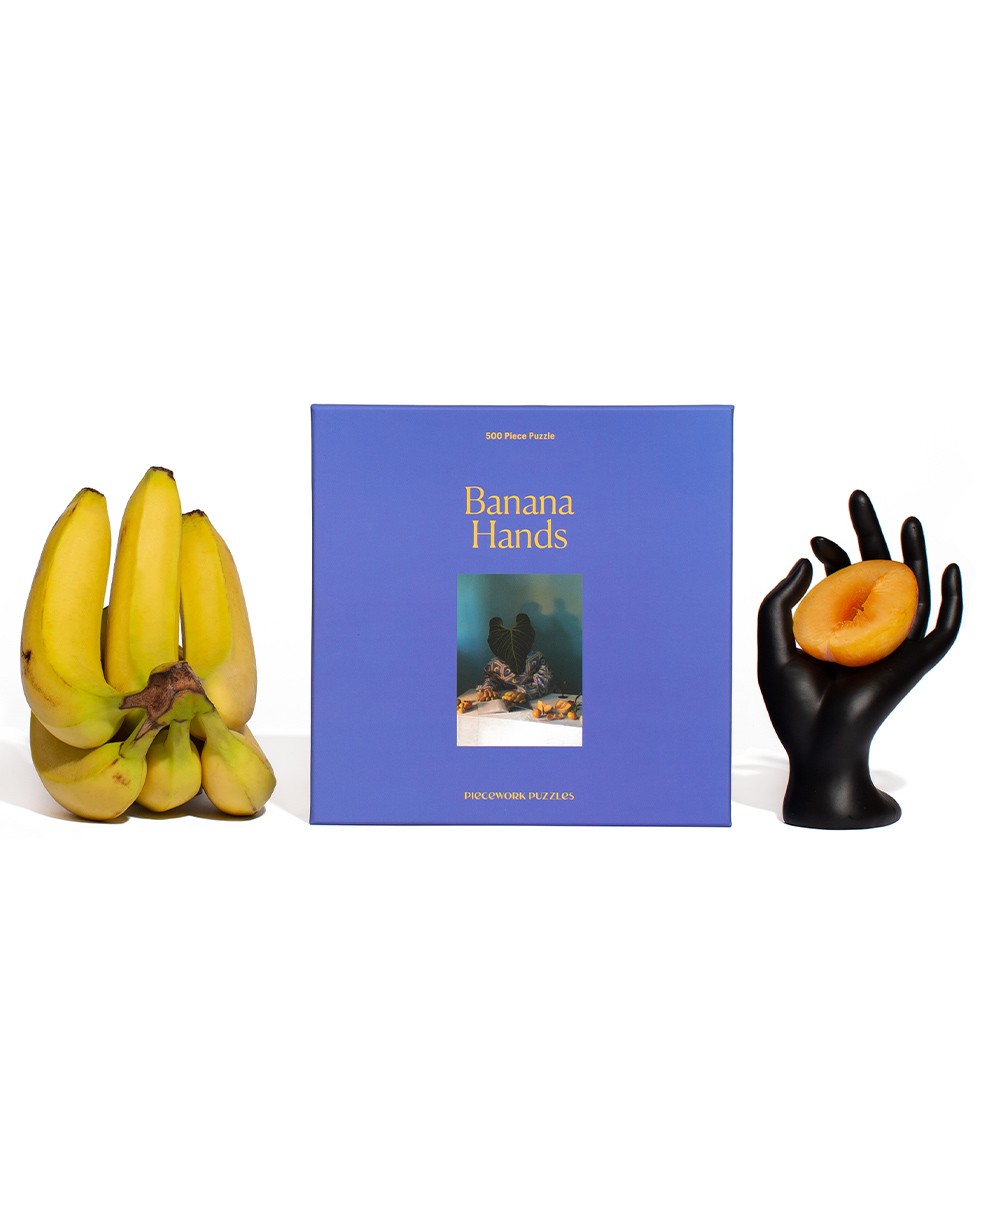 Moodbild des Puzzle Banana Hands von Piecework im RAUM concept store 